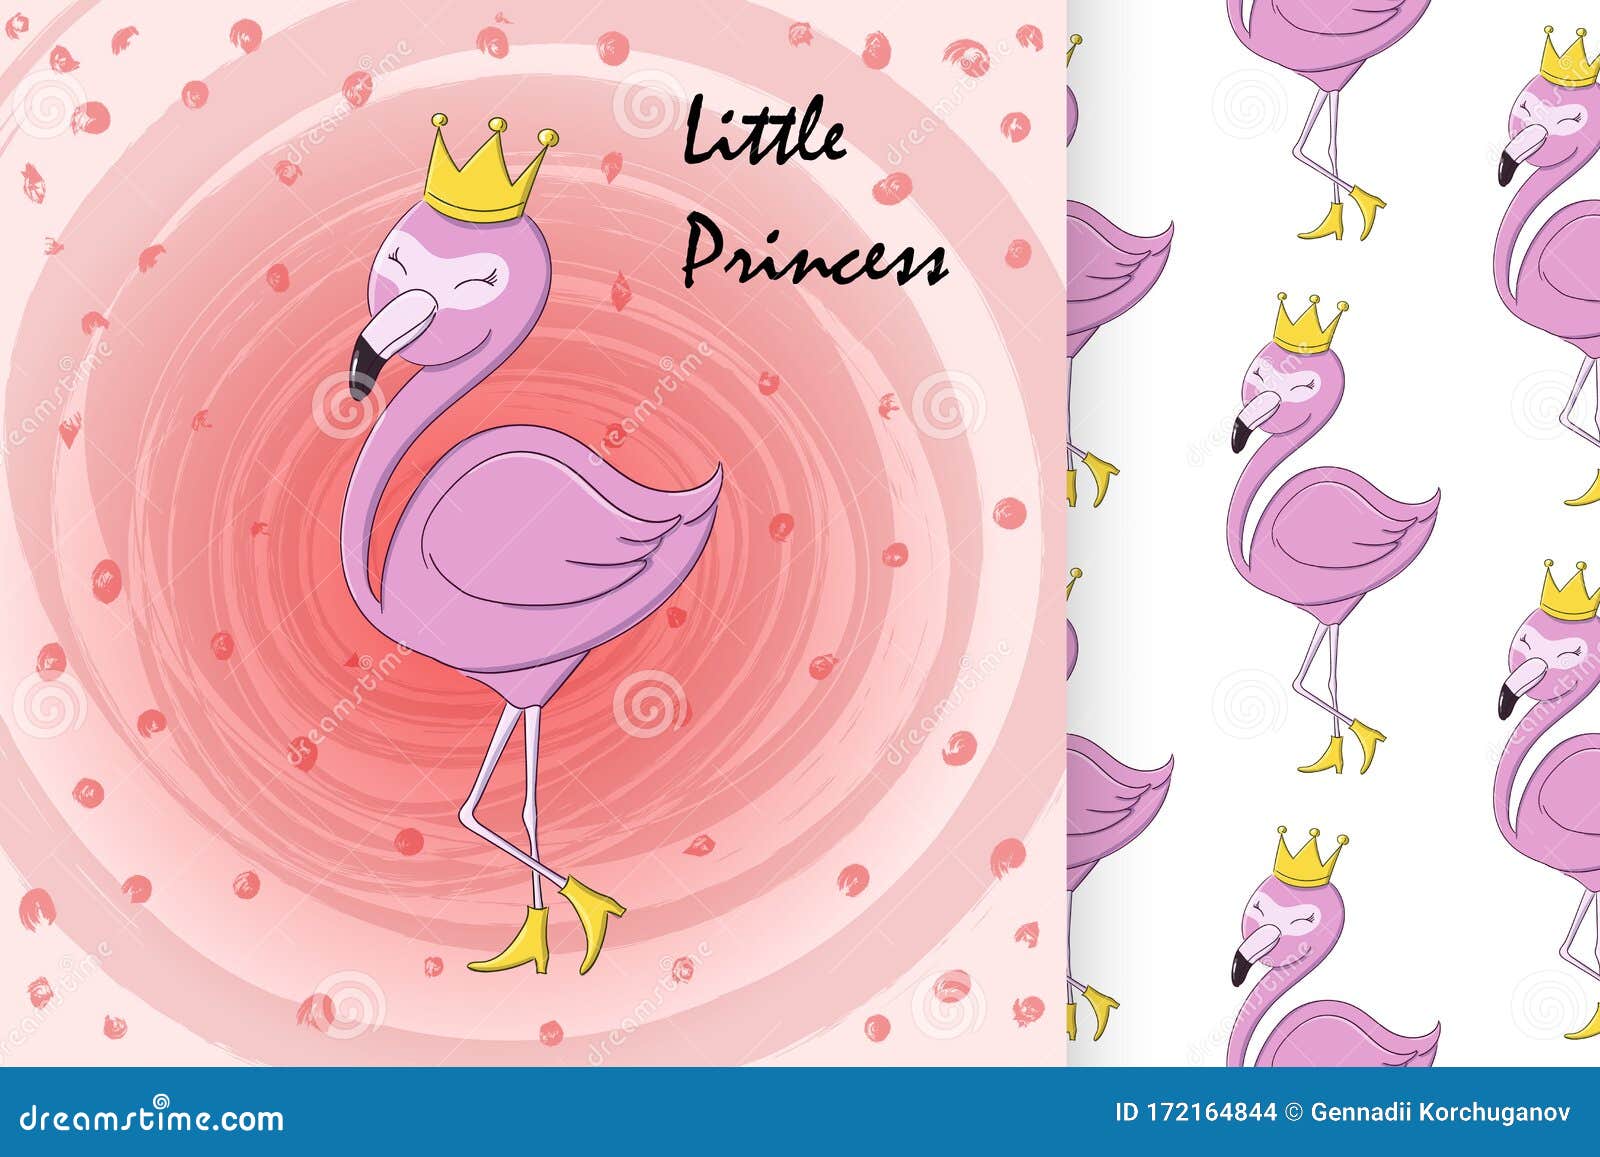 Queen Flamingo Stock Illustrations – 304 Queen Flamingo Stock  Illustrations, Vectors & Clipart - Dreamstime